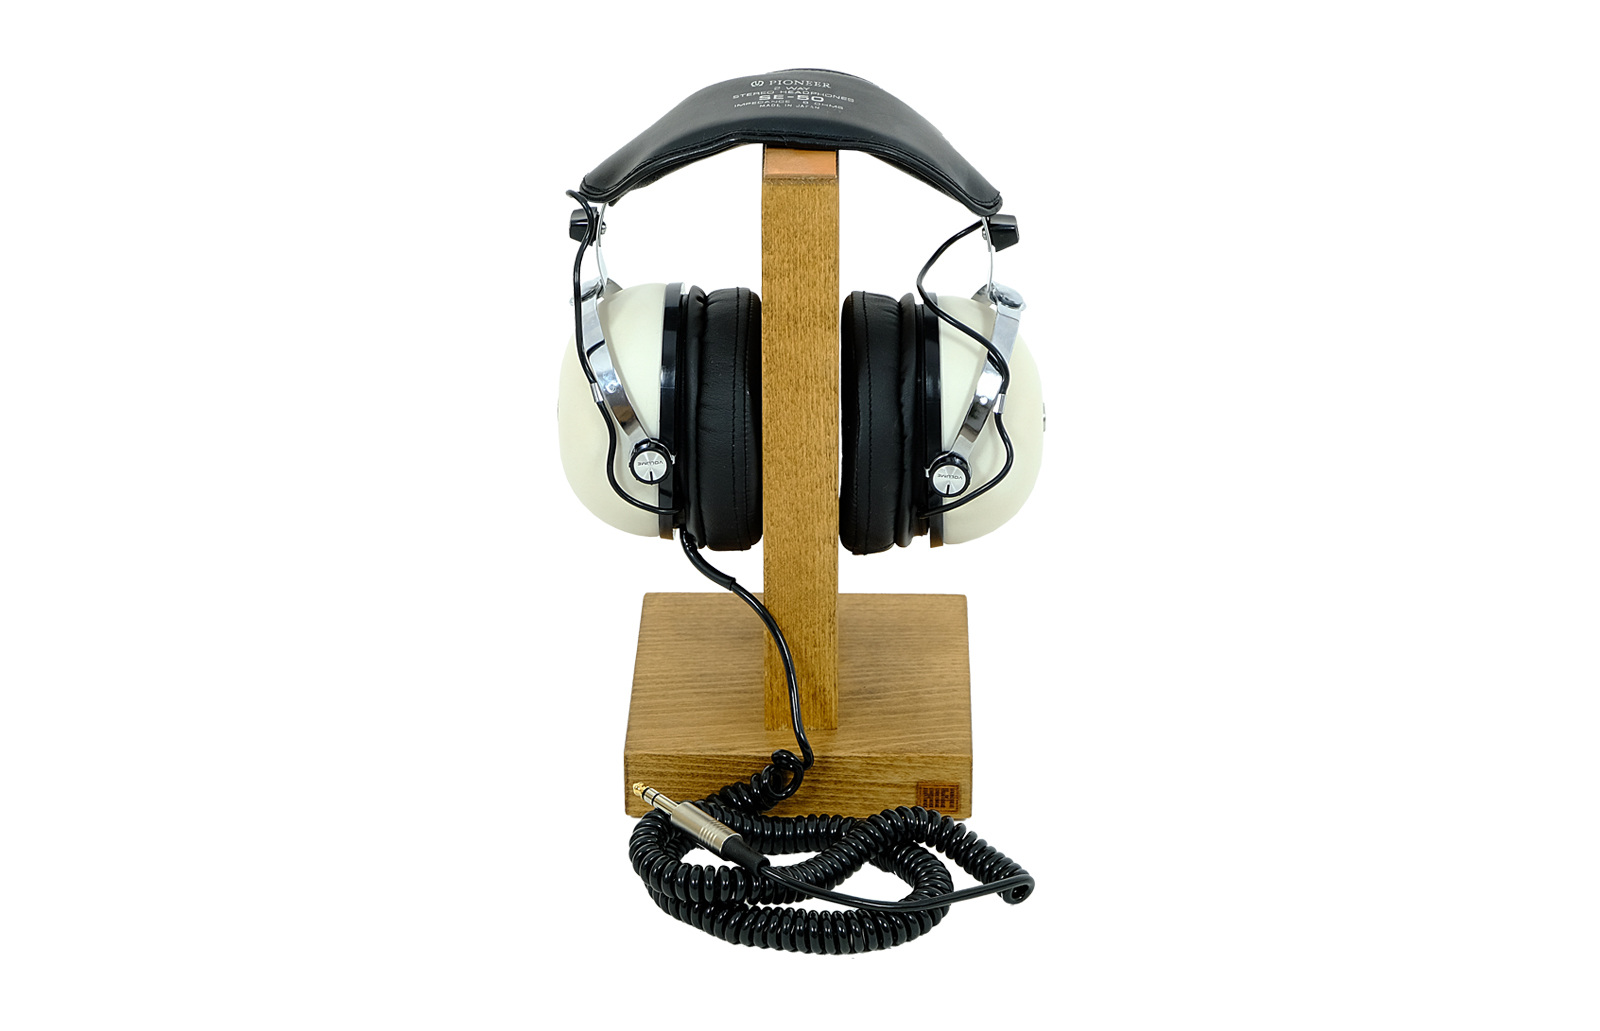 Pioneer SE-50 headphones